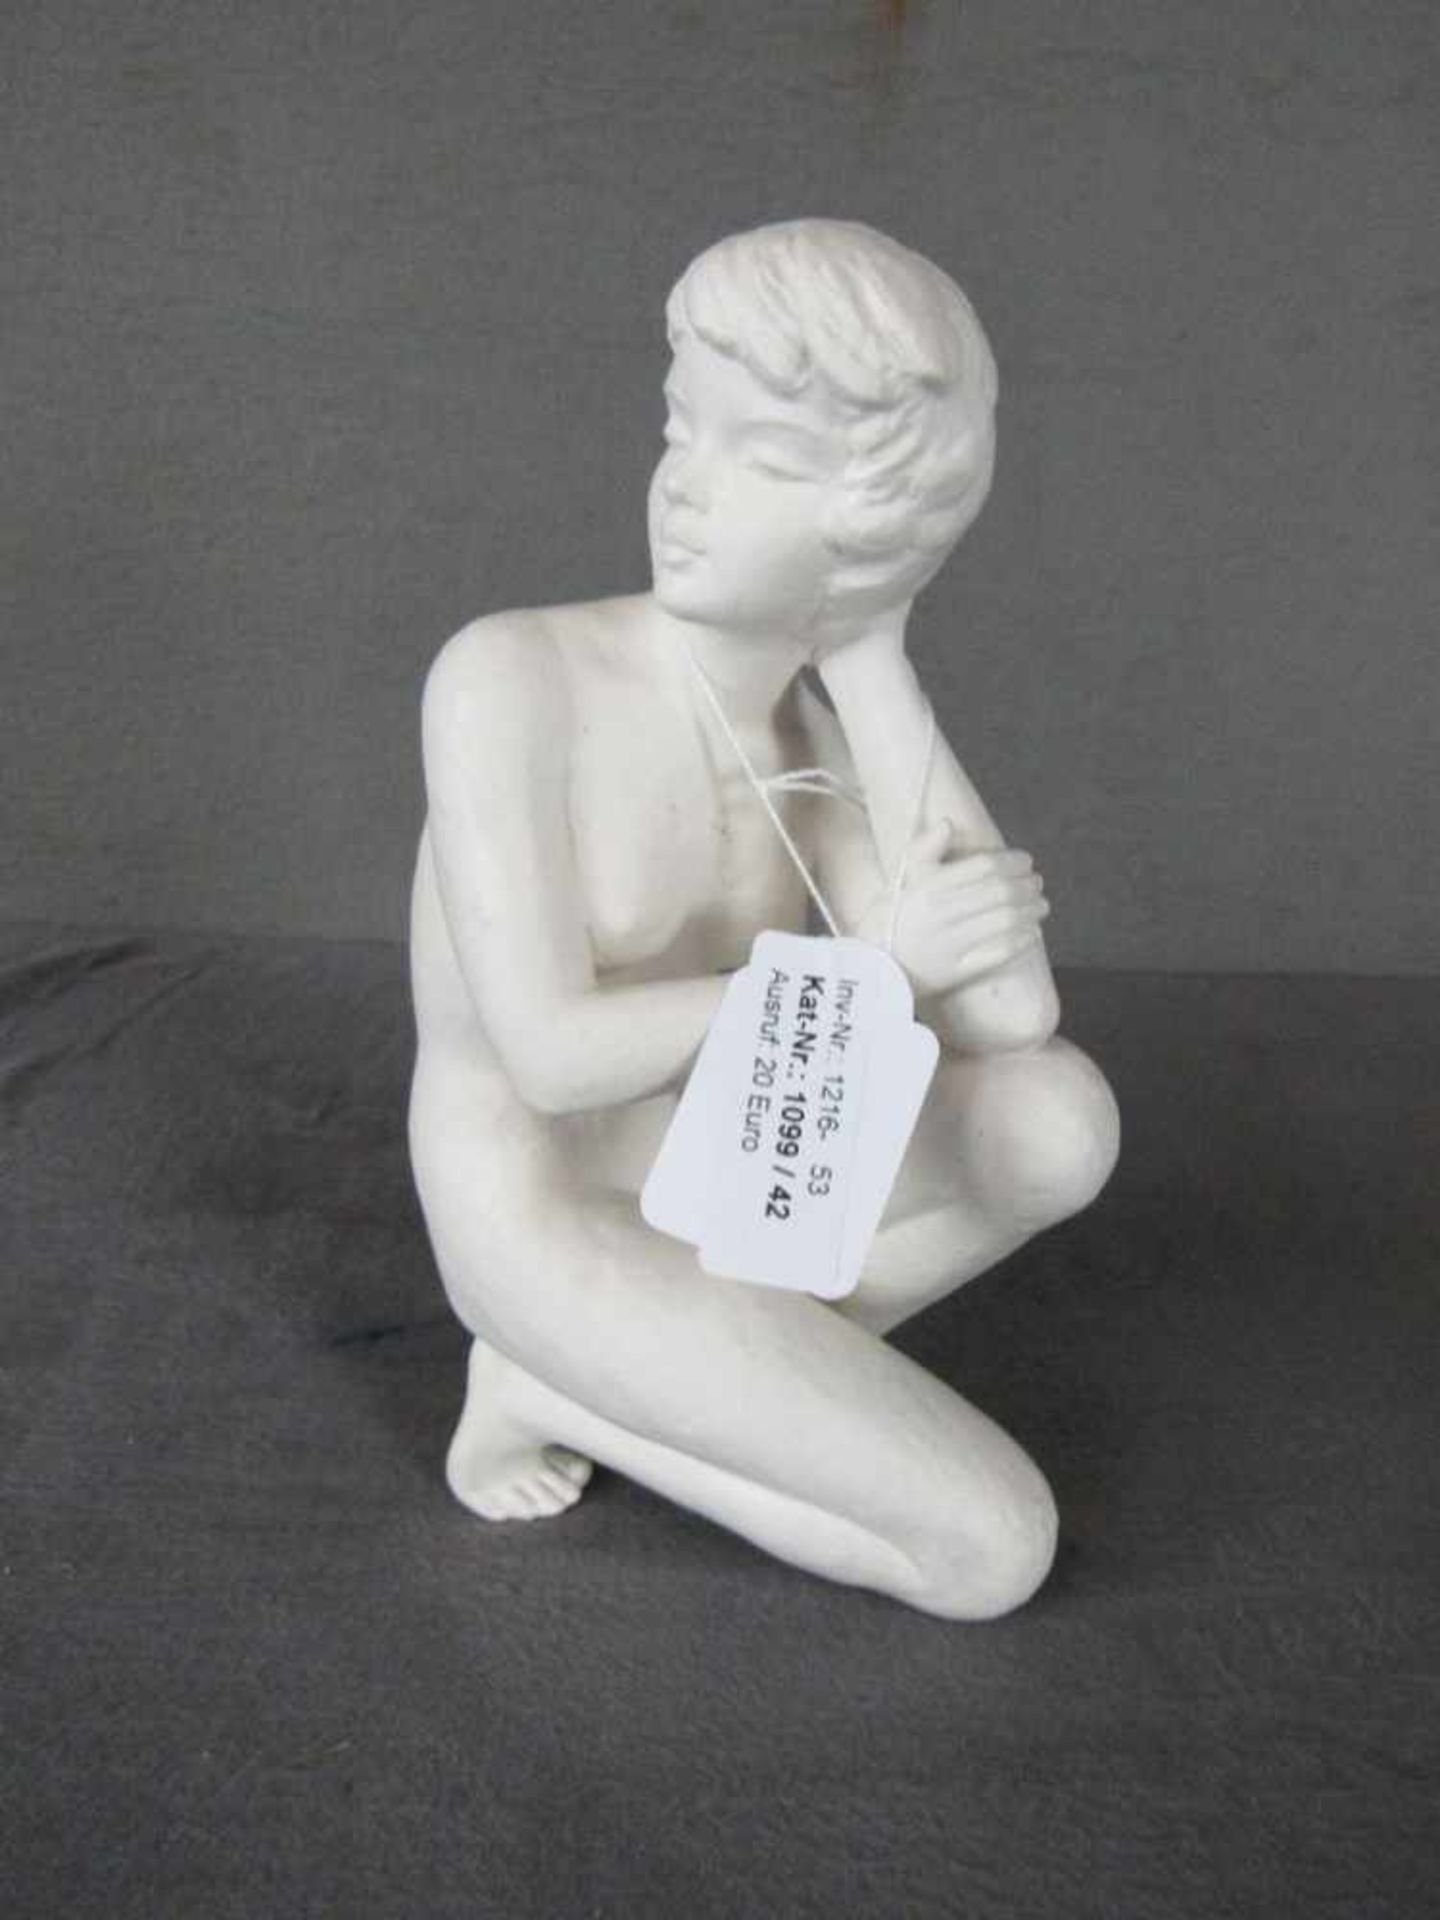 Skulptur weibliche Aktszene Goebel FN73 22,5cm hoch- - -20.00 % buyer's premium on the hammer